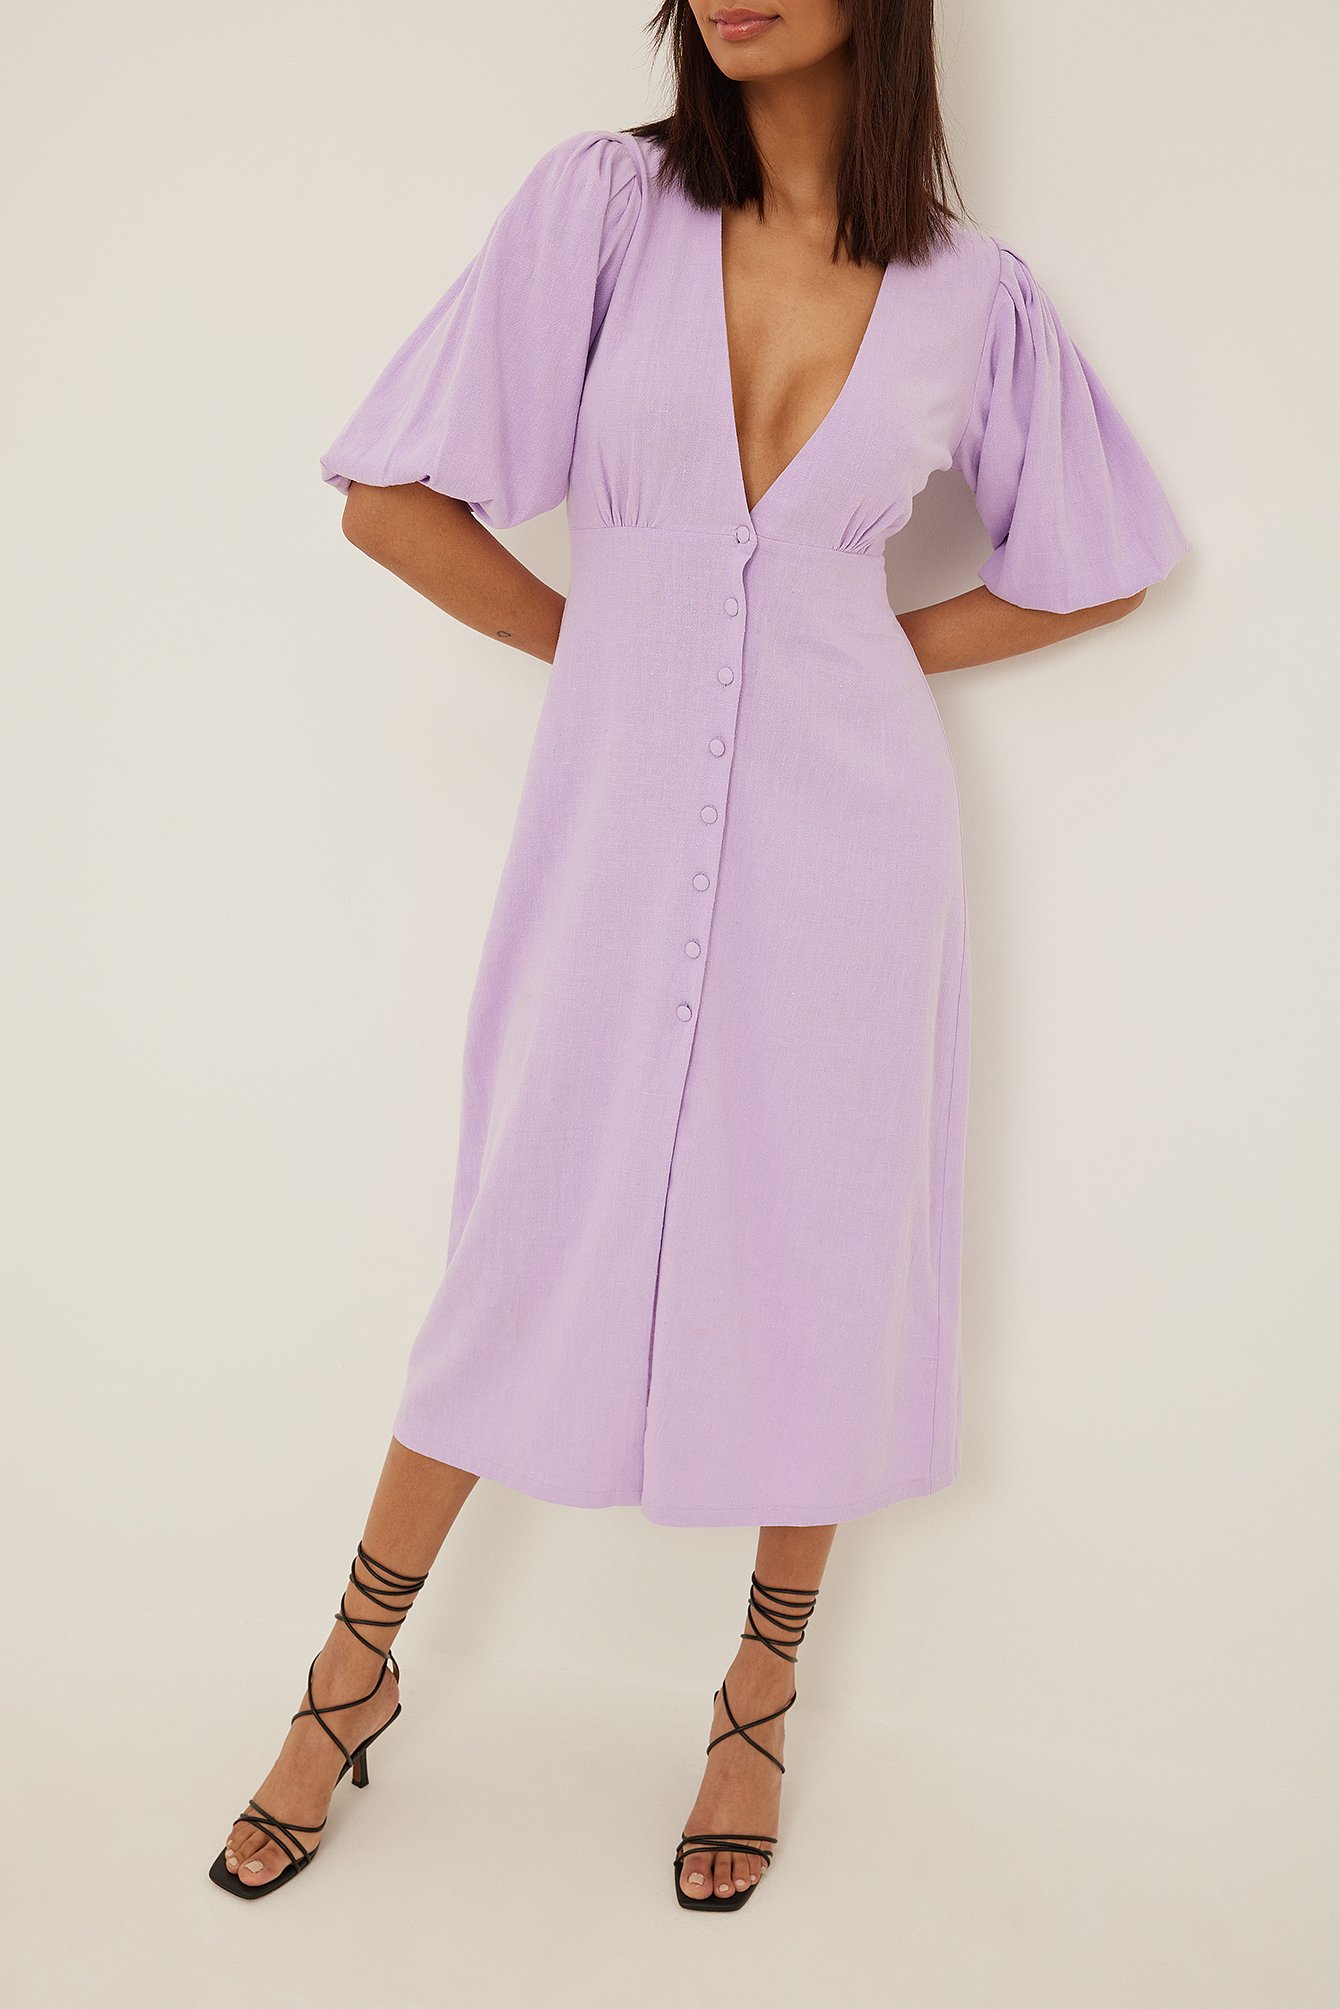 Lavender Midiklänning i linne med knappar